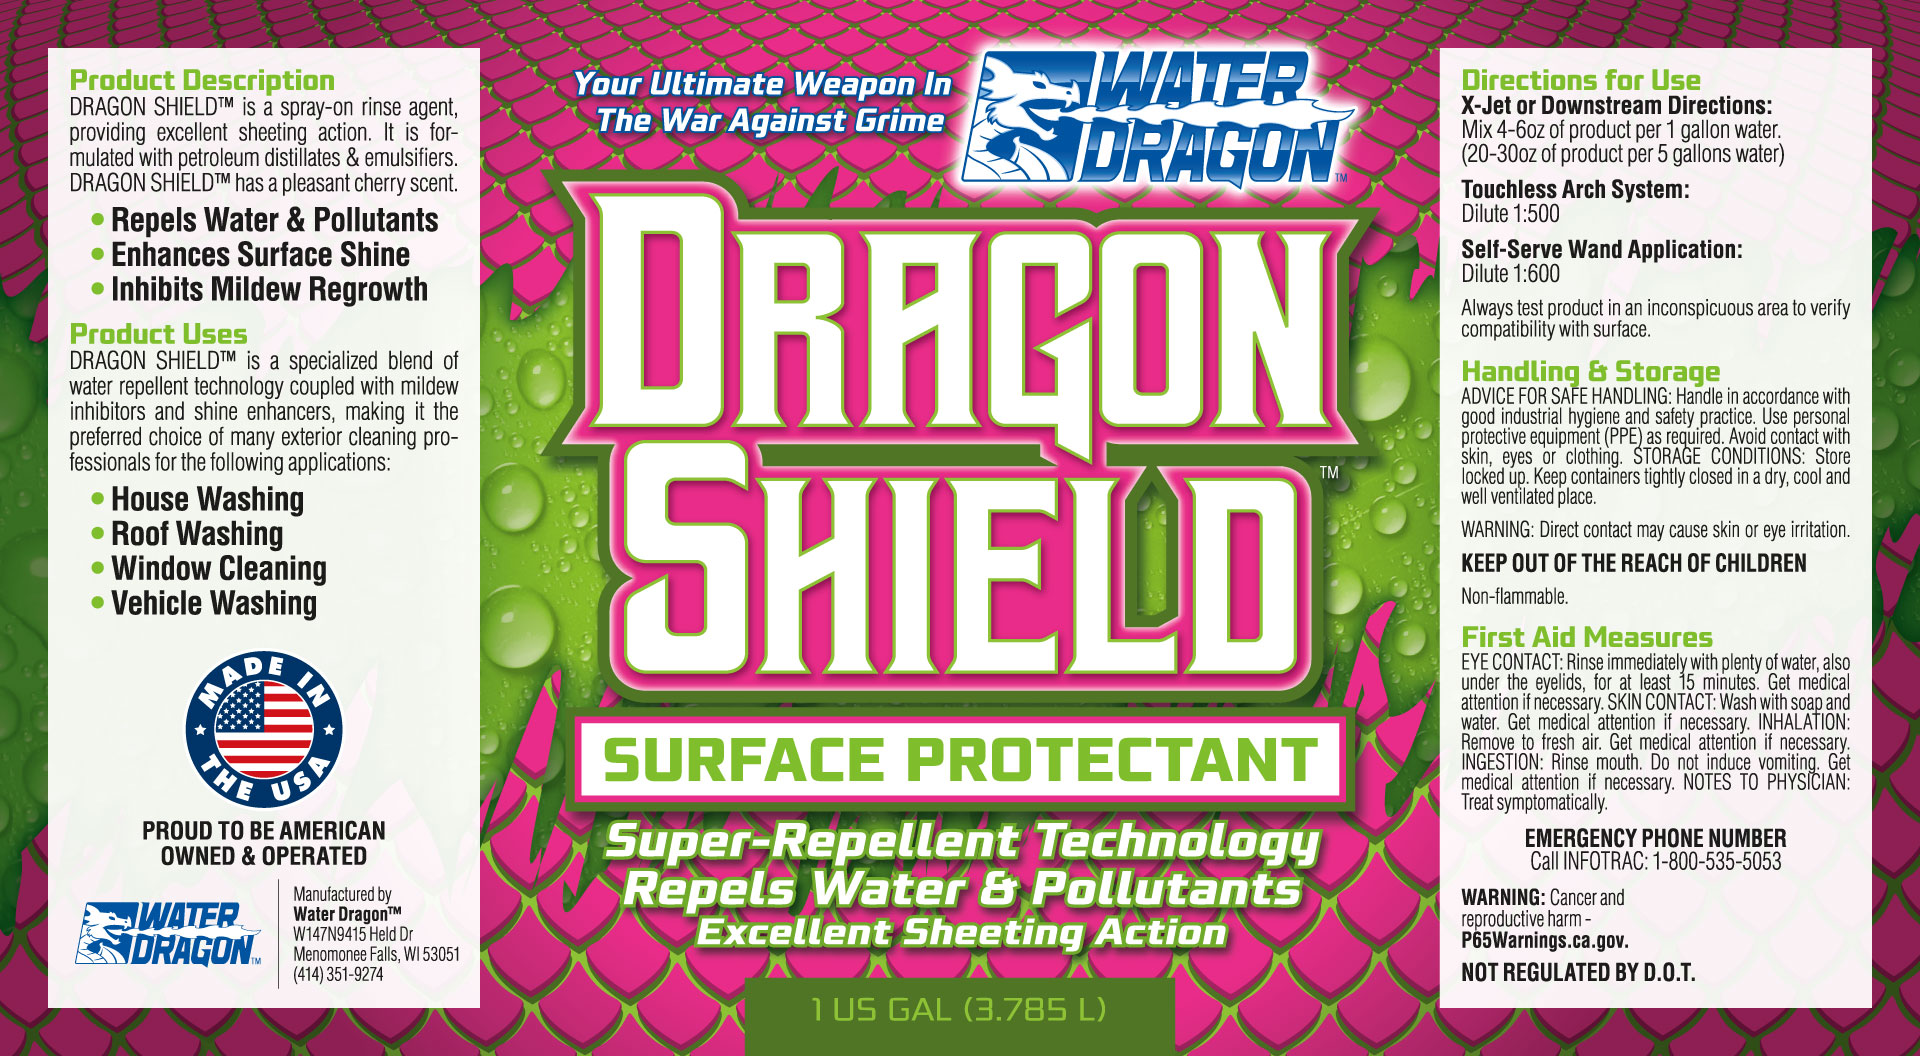 Water Dragon Dragon Shield